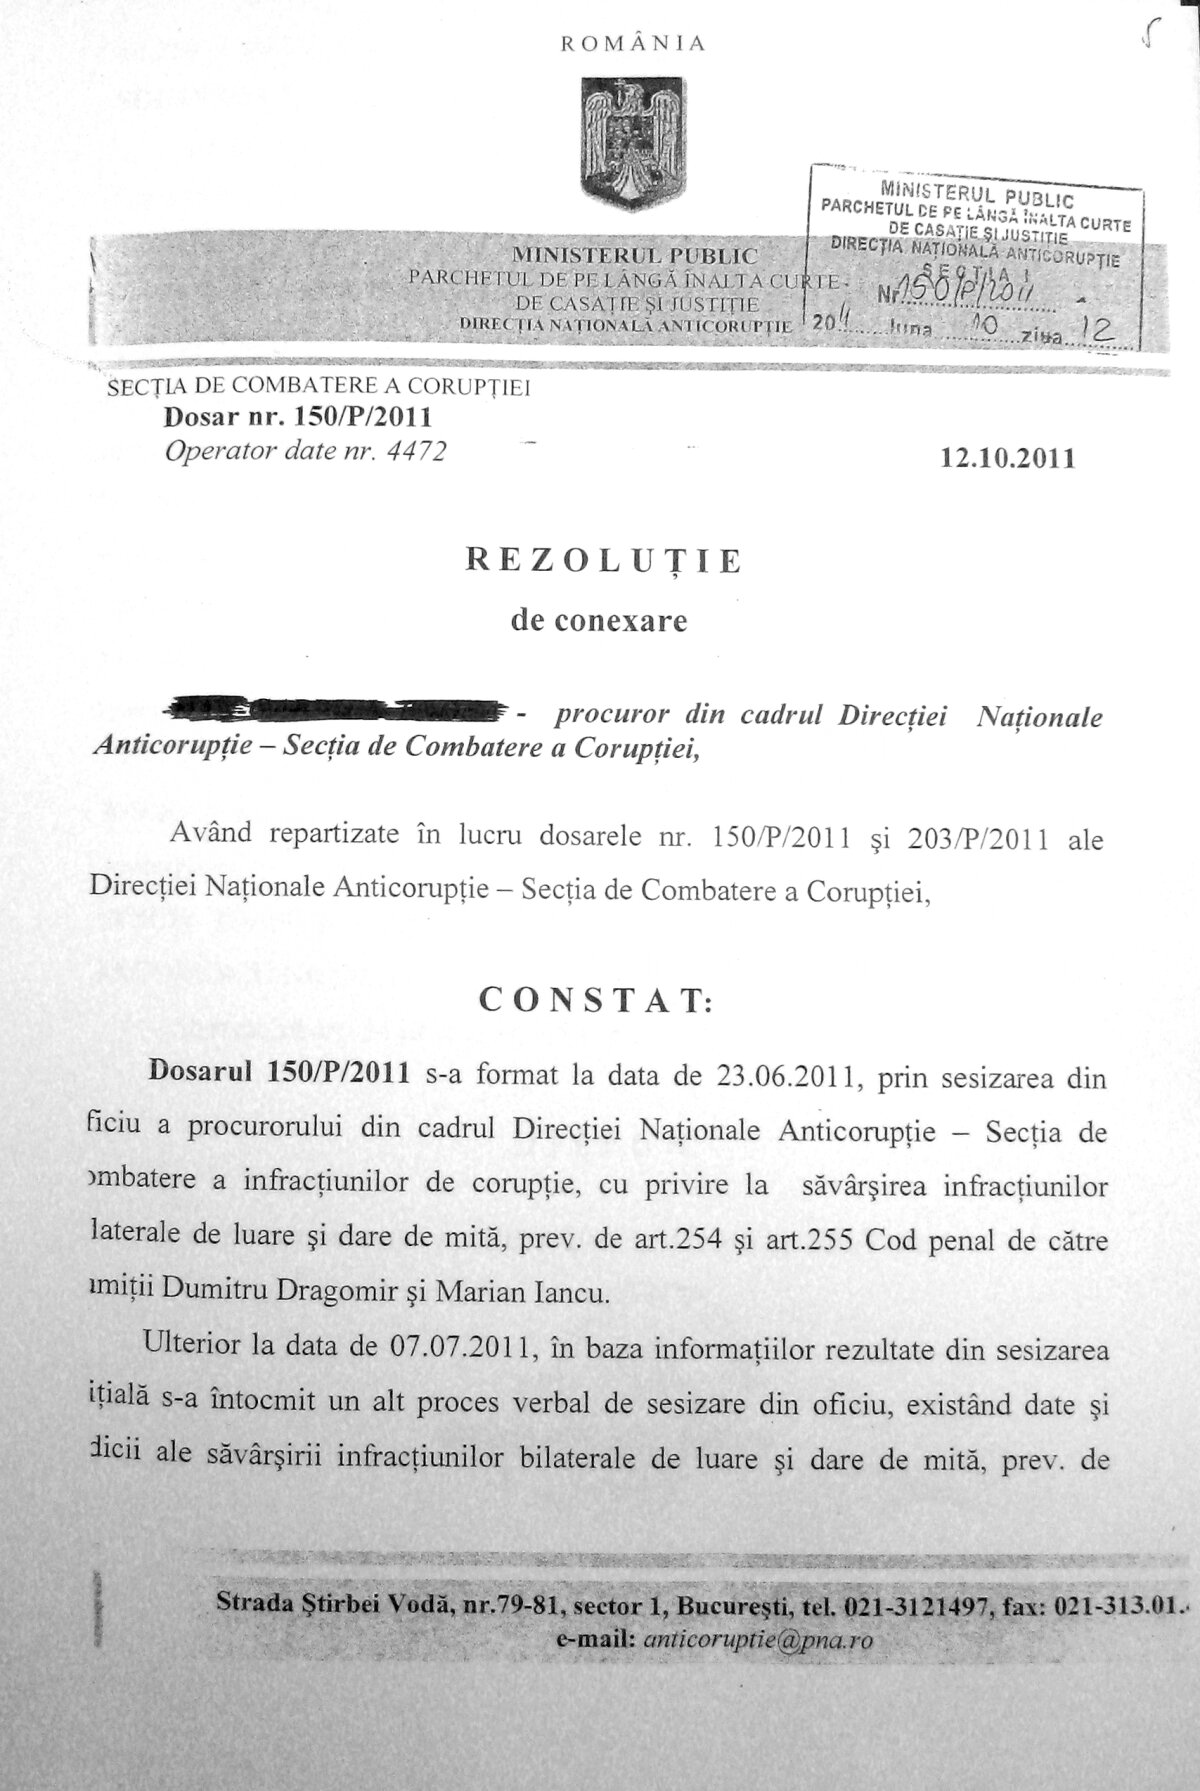 EXCLUSIV ”Mită pentru licenţiere” » Gazeta îţi prezintă dovada că DNA le face dosar lui Iancu şi lui Dragomir